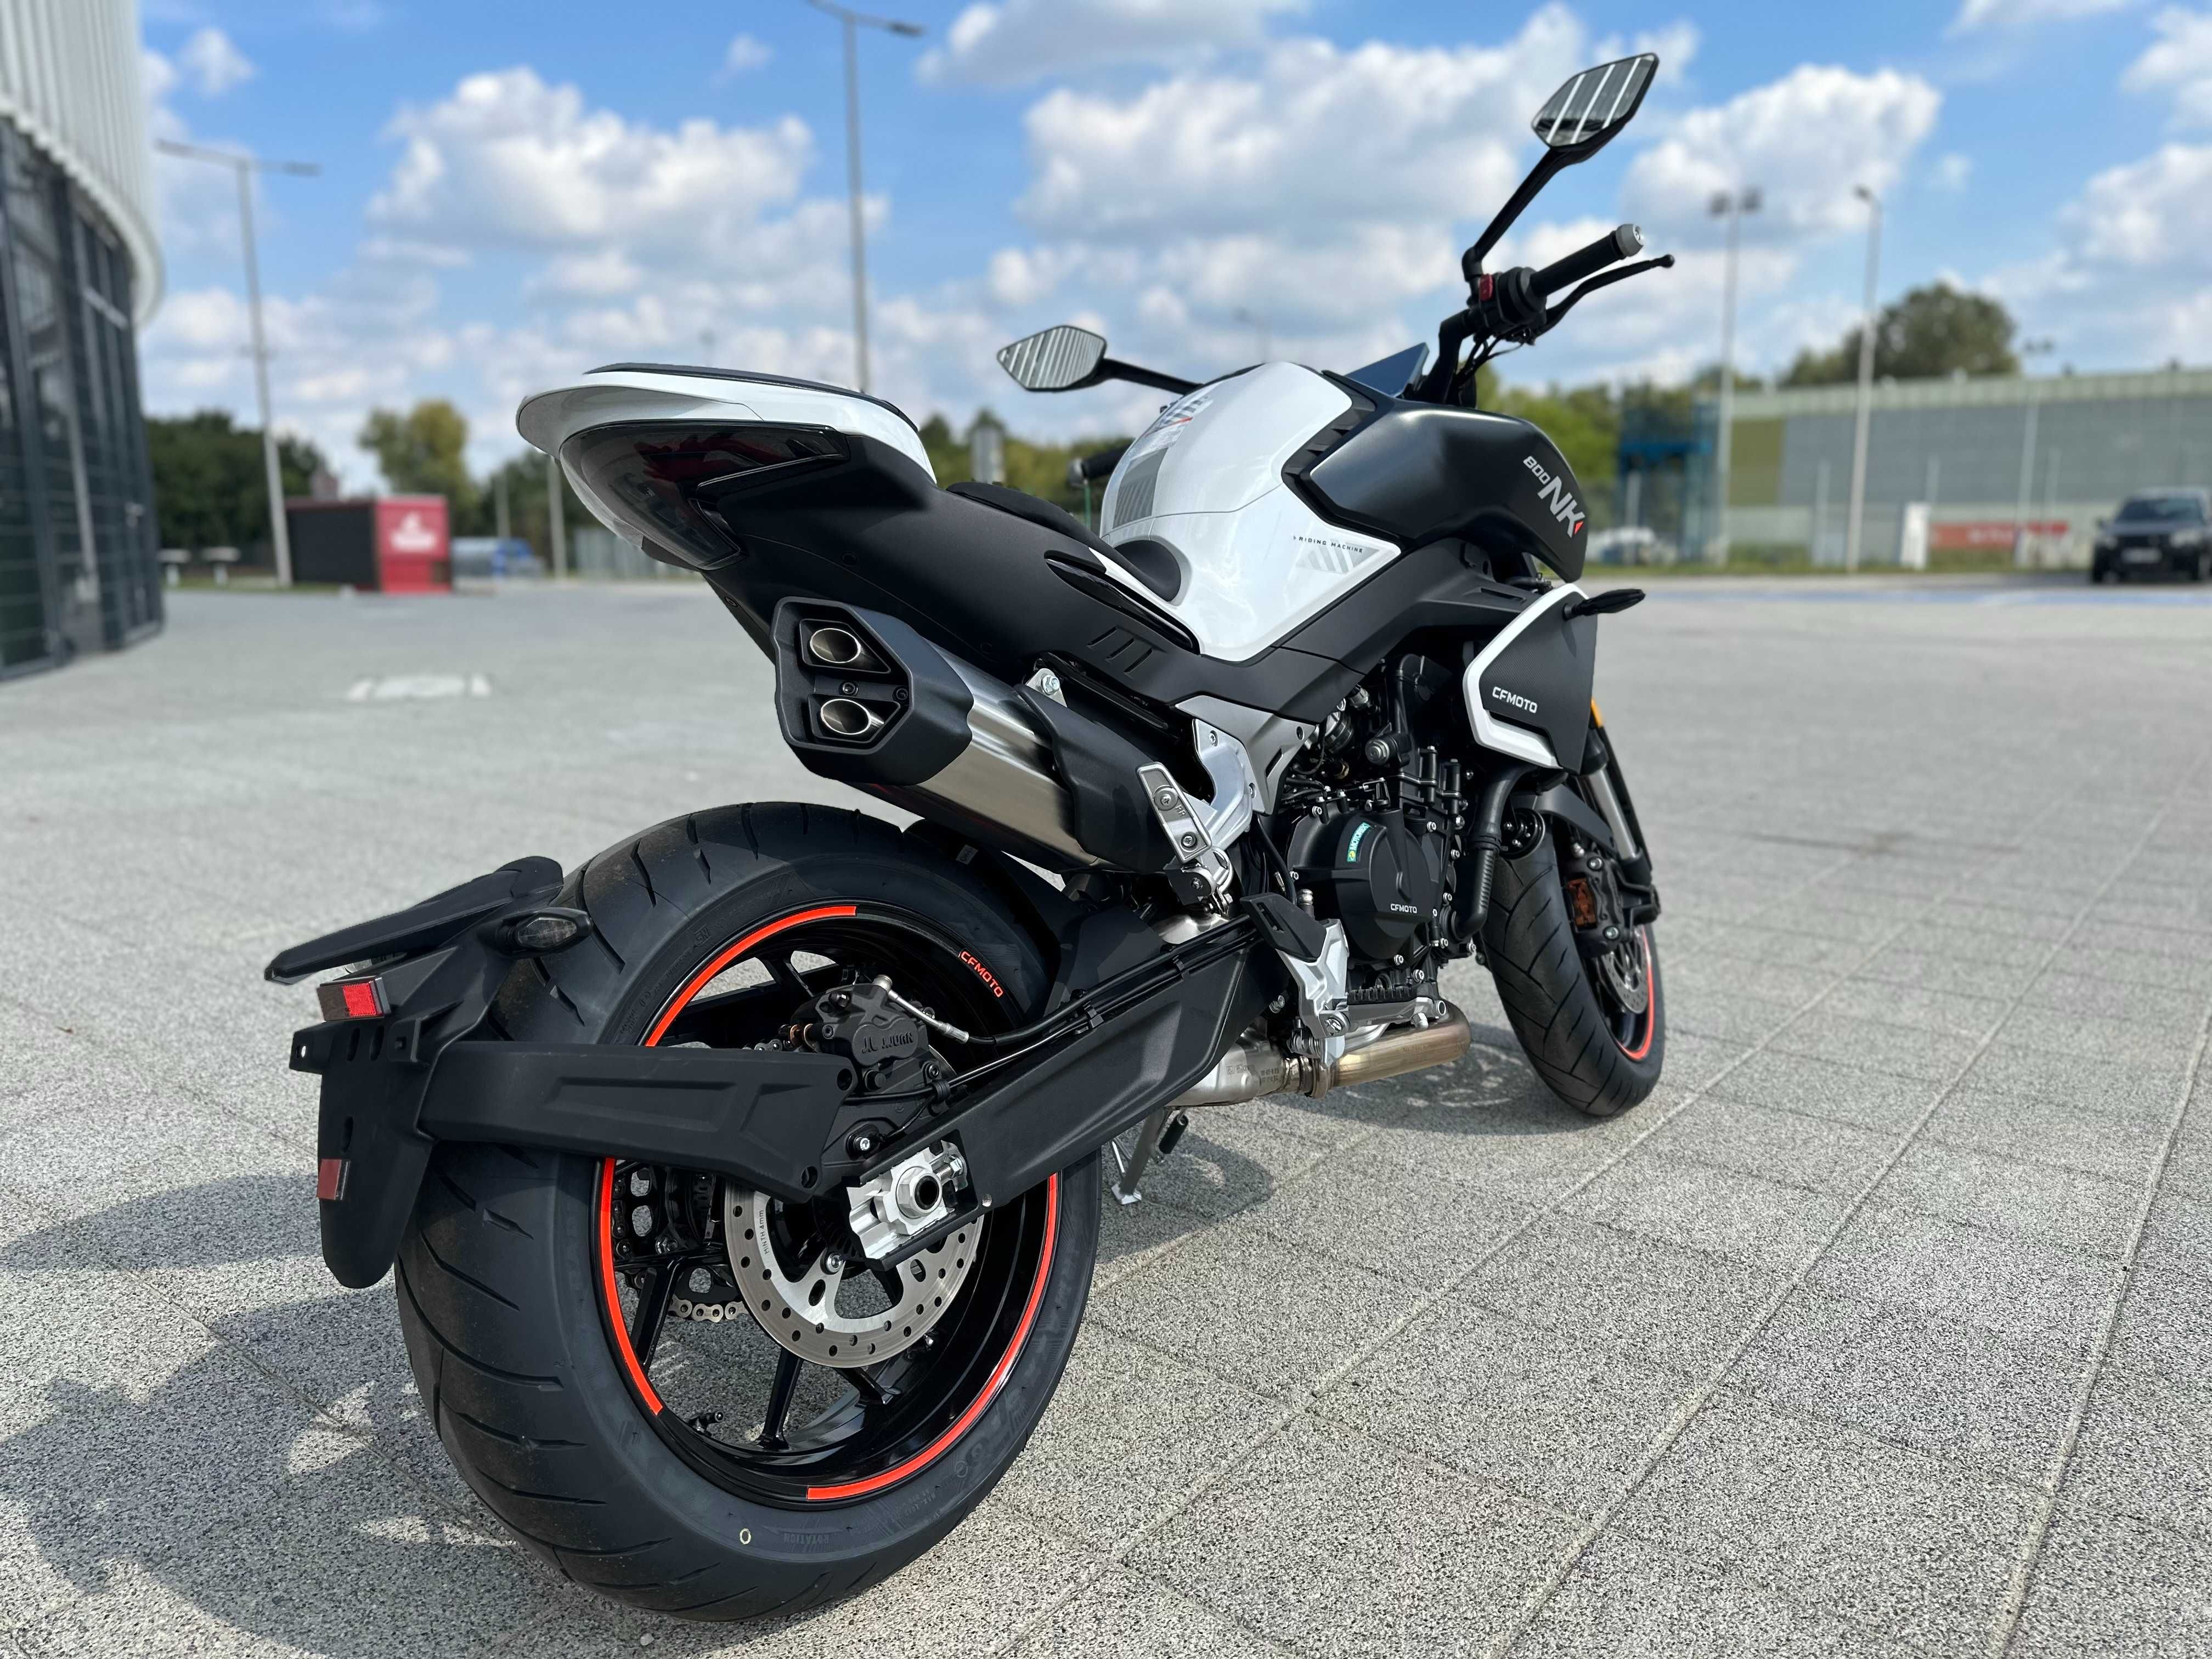 Motocykl CF Moto 800NK Advance Wyprzedaż Raty 0% /Leasing /Transport